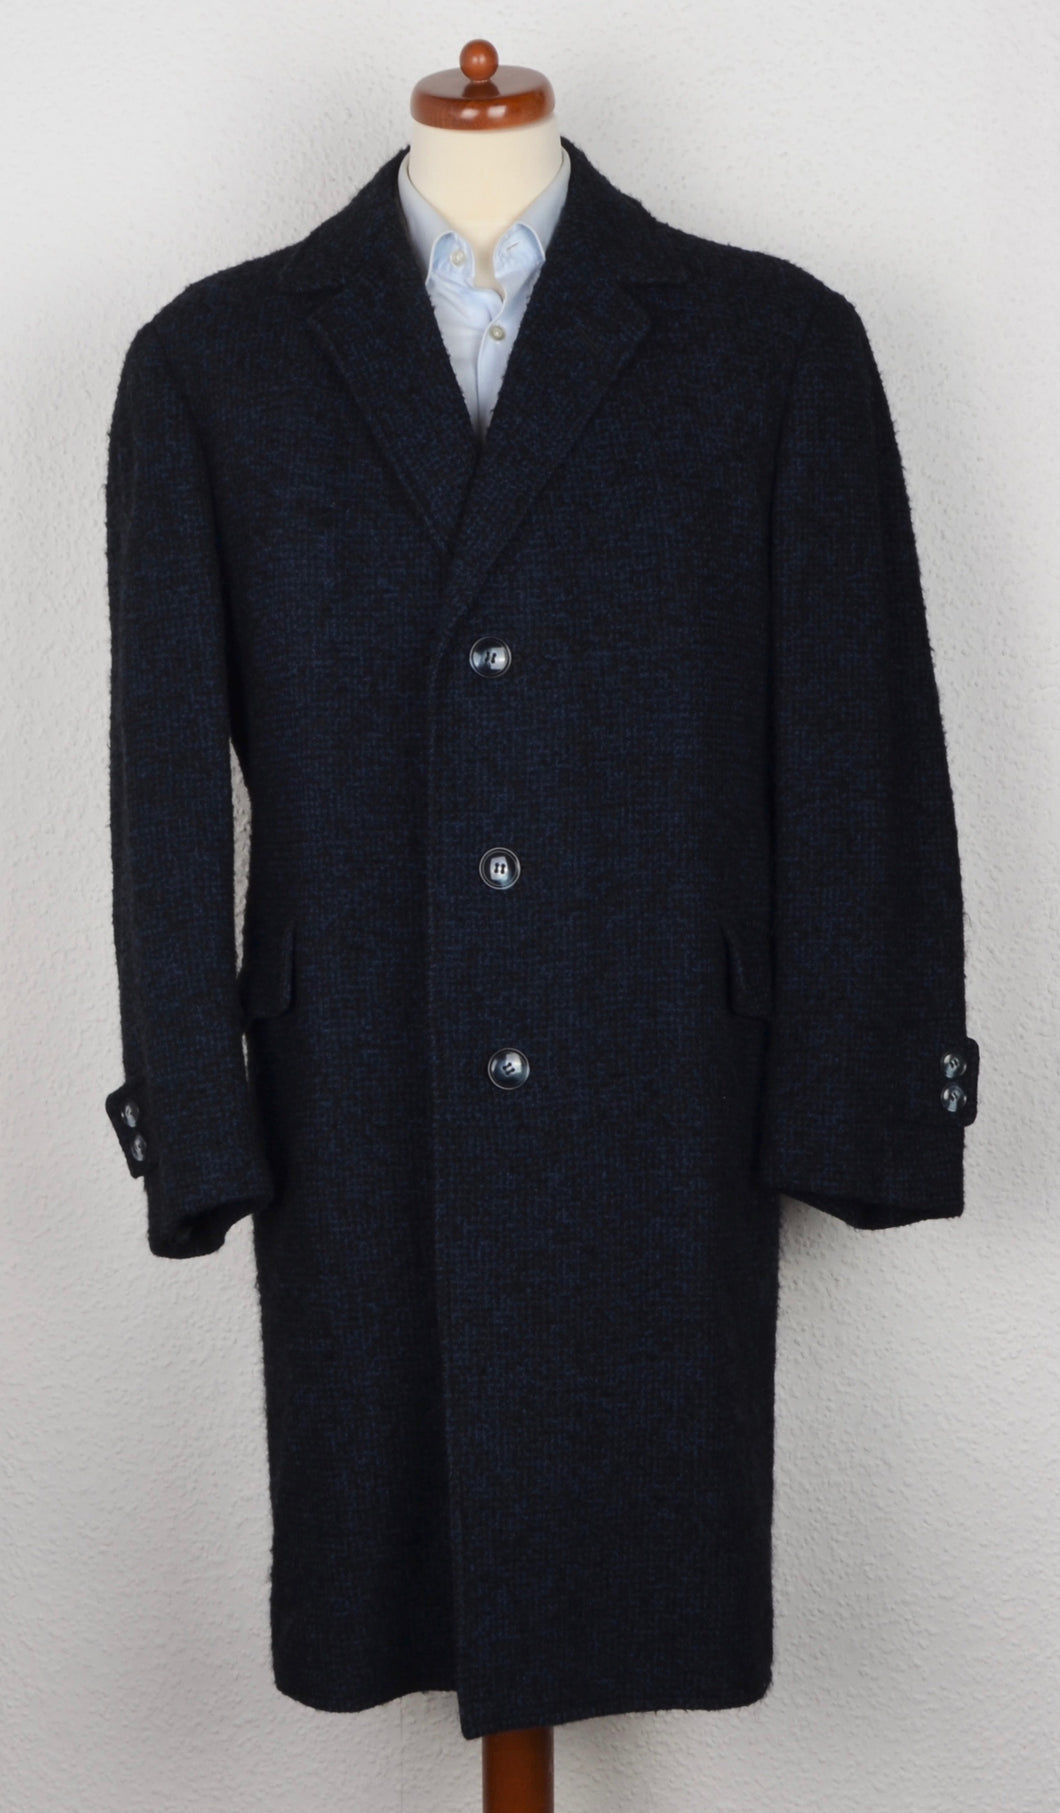 Handgefertigter Mantel mit Gürtel - Schwarz & Blau